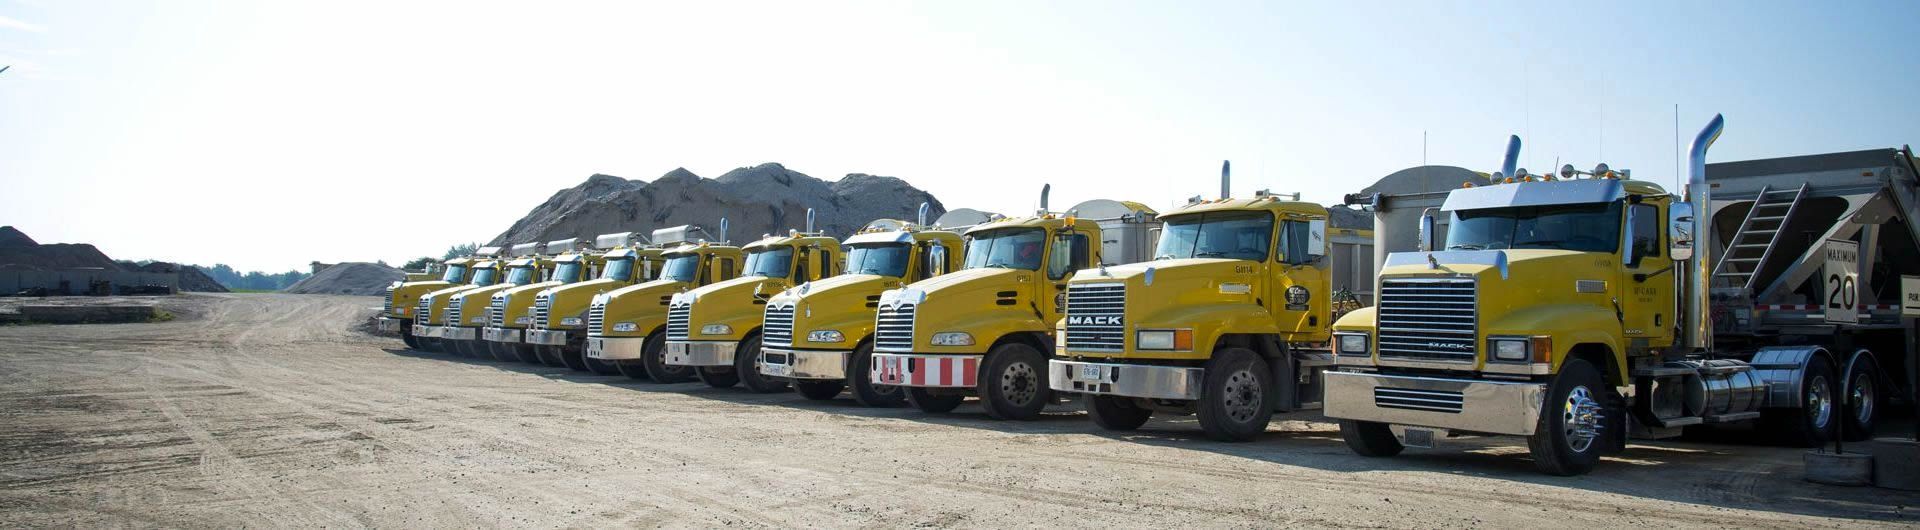 fleet of gravel trucks